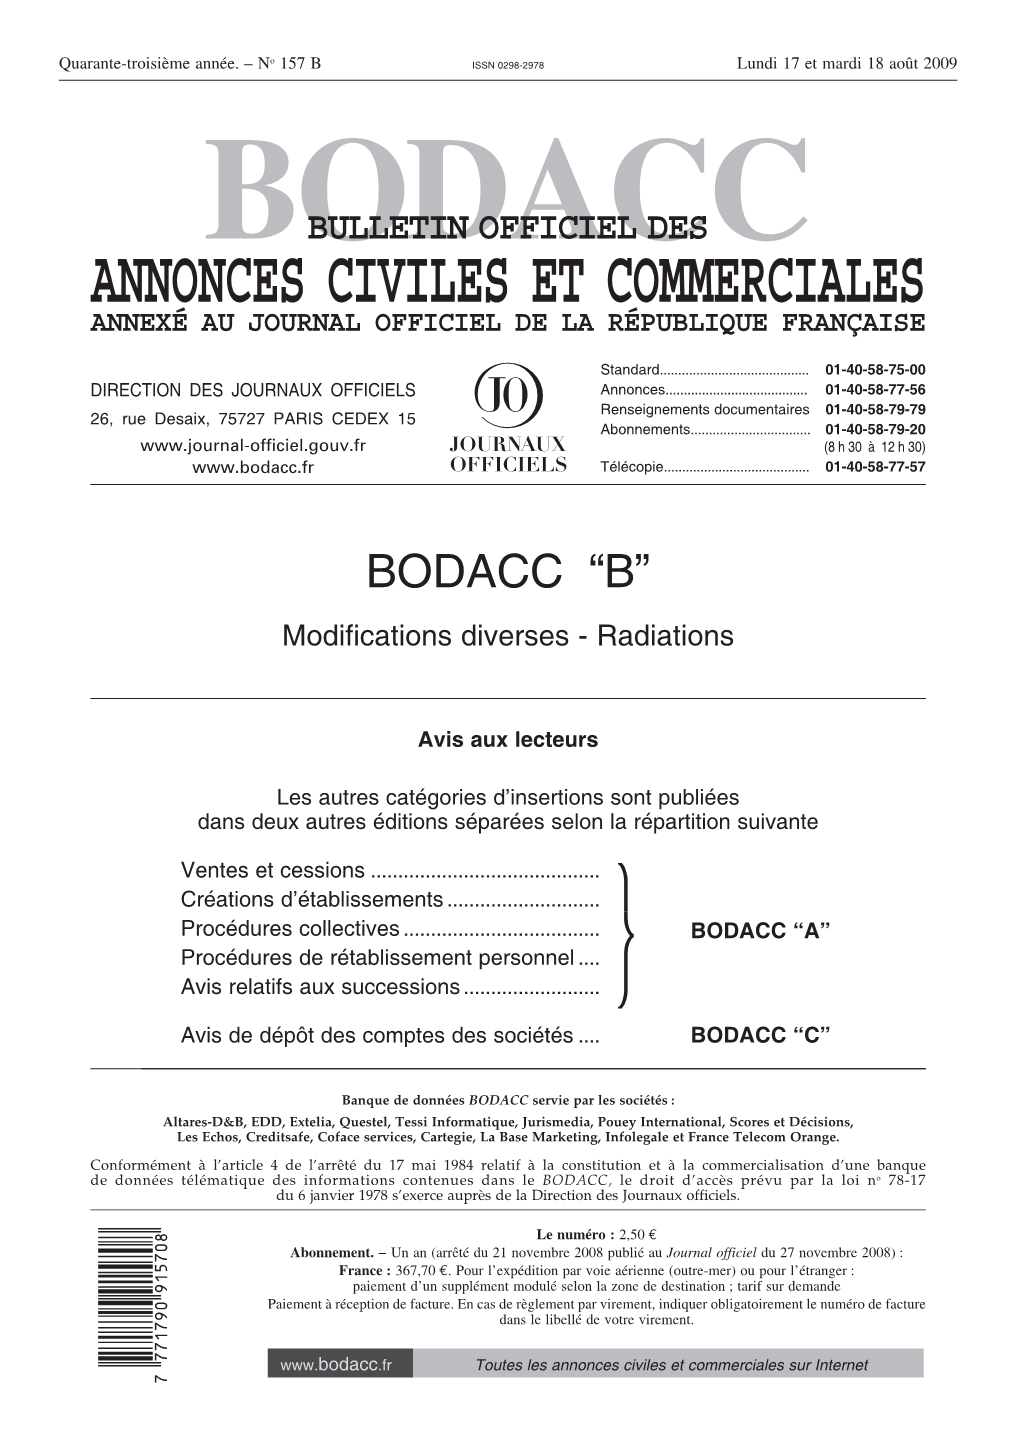 BODACC-B 20090157 0001 P000.Pdf